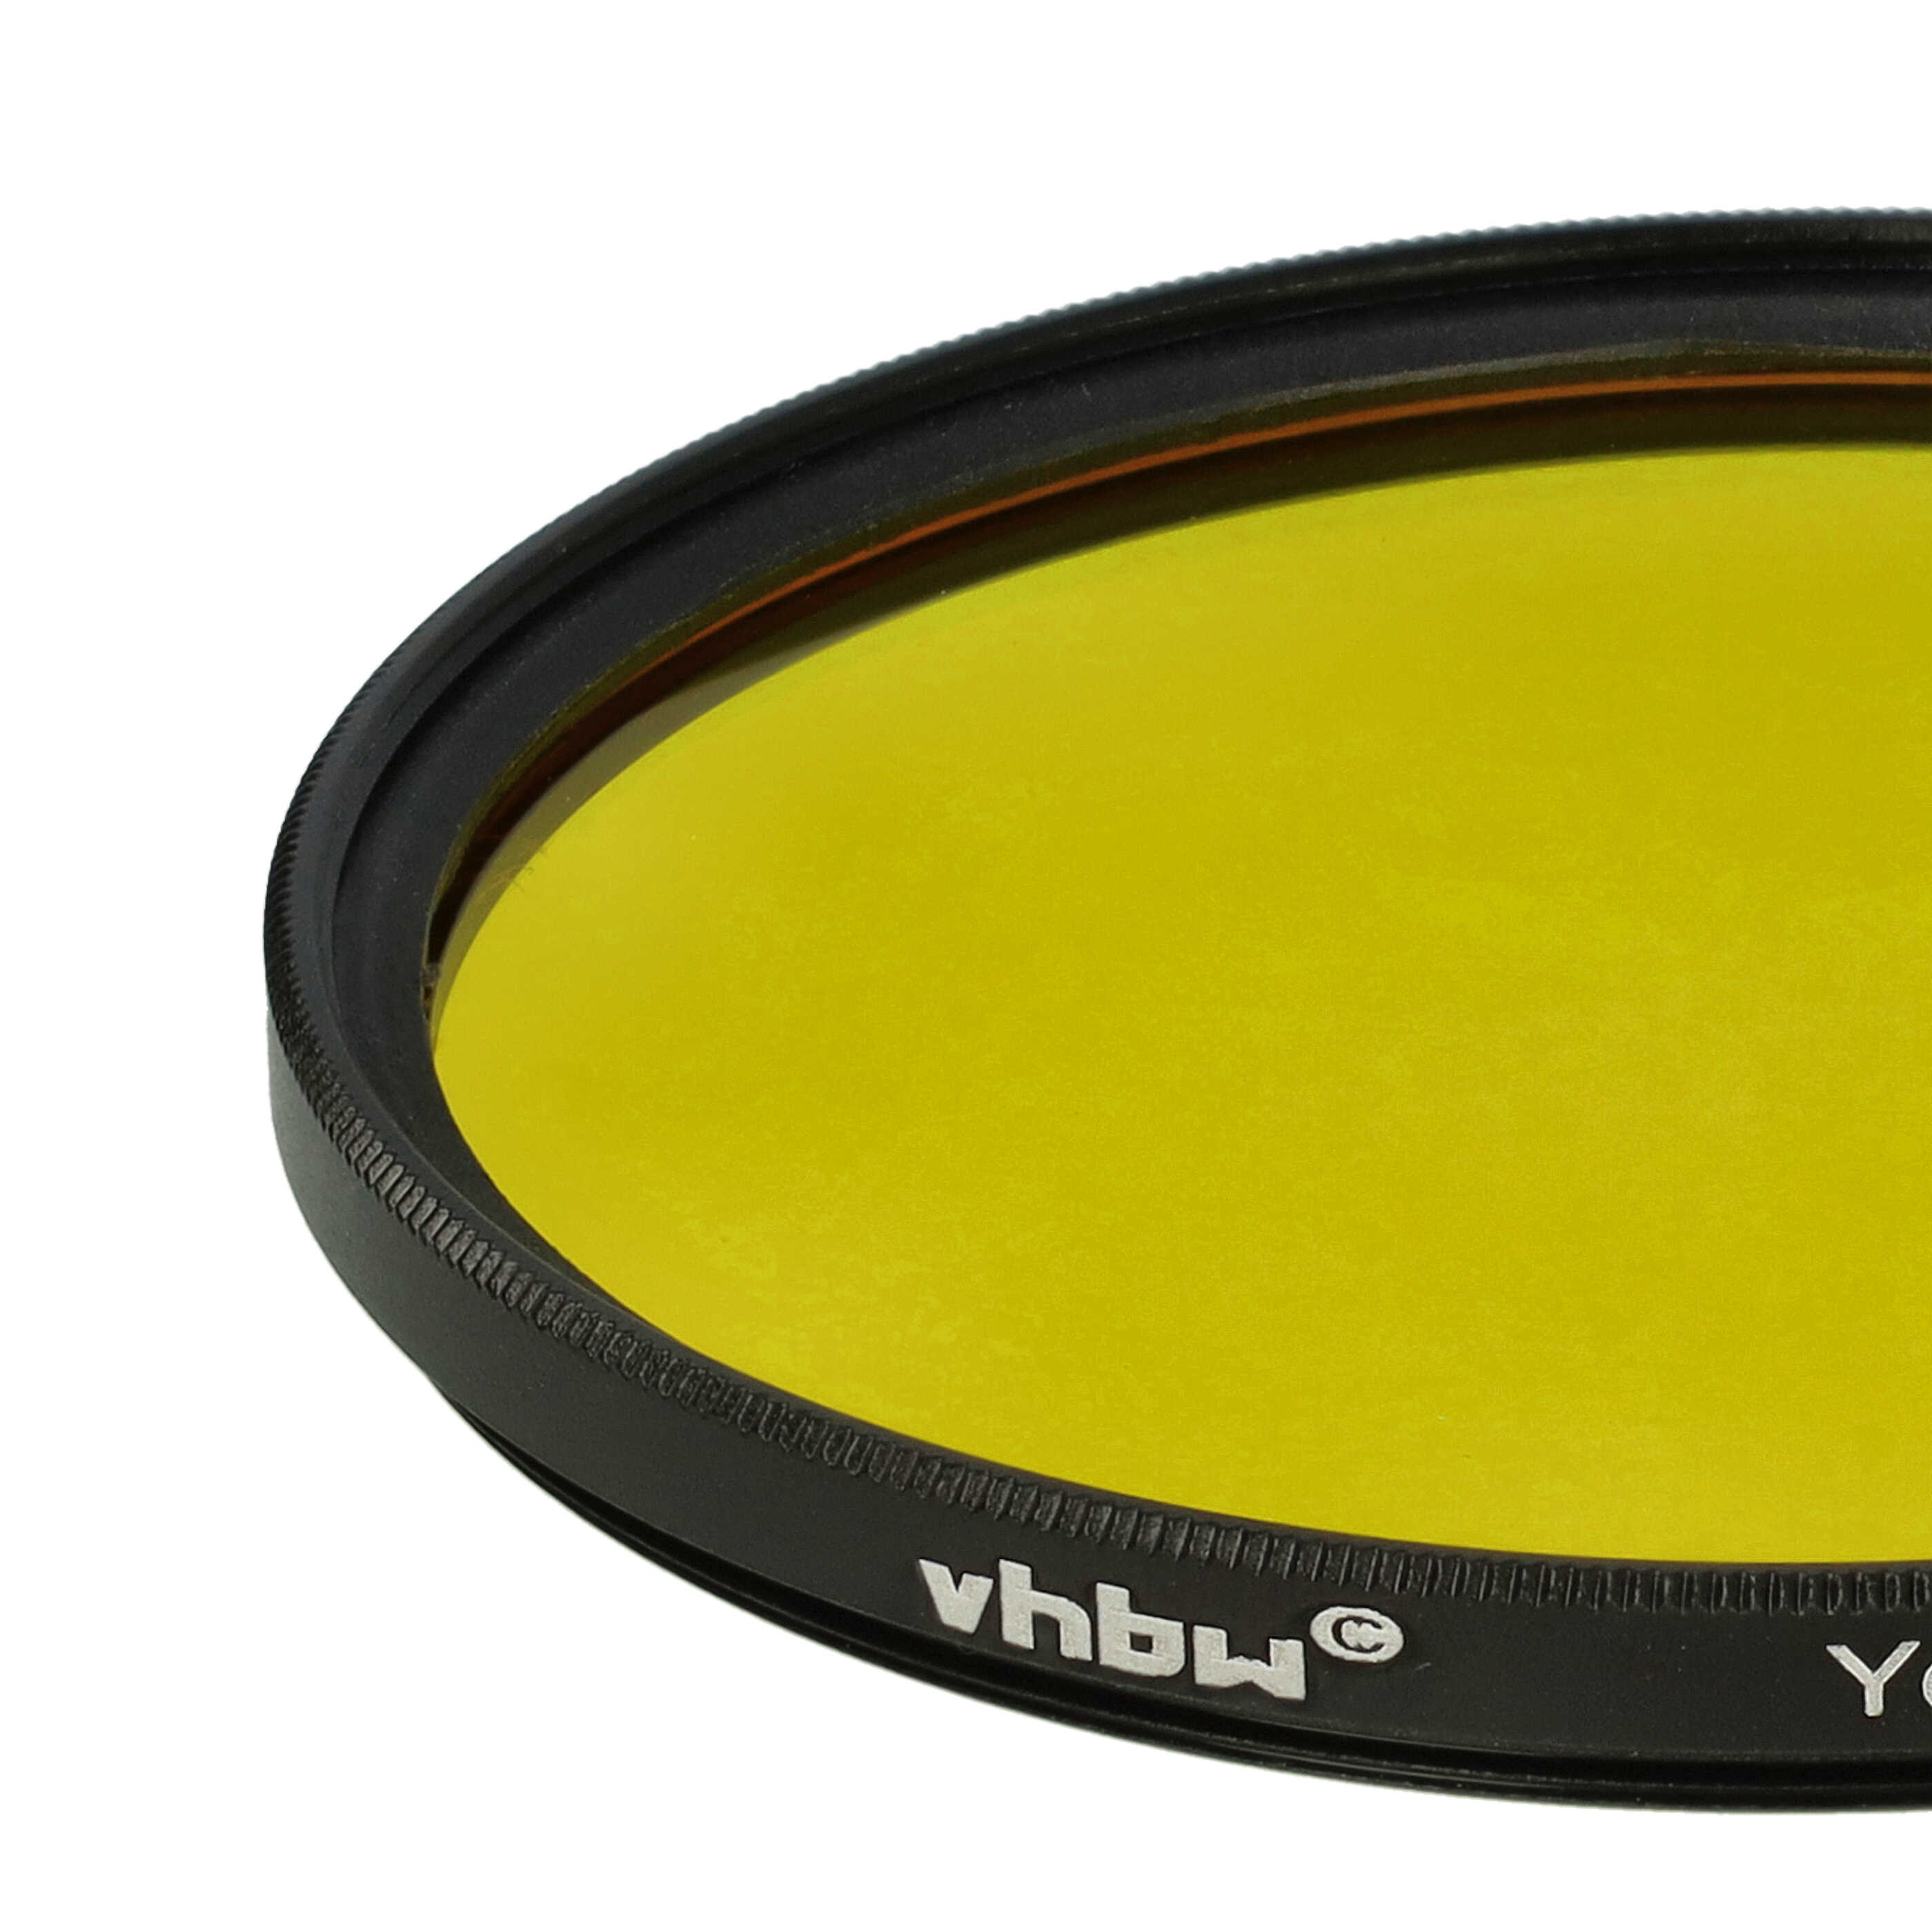 Farbfilter gelb passend für Kamera Objektive mit 67 mm Filtergewinde - Gelbfilter